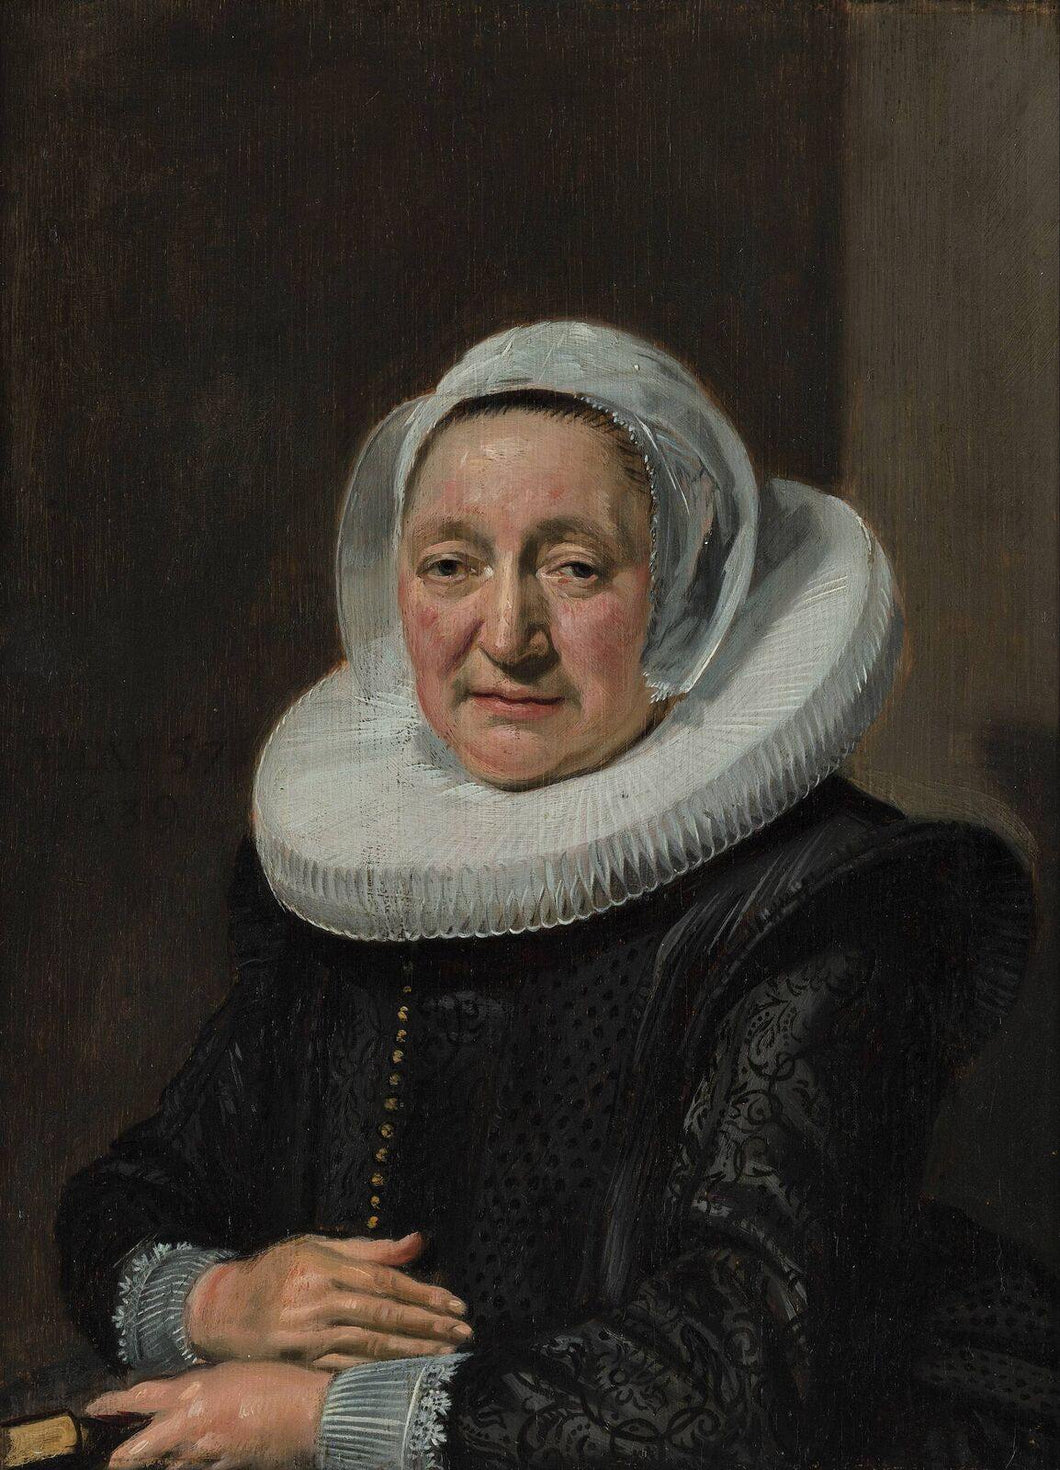 Retrato de uma mulher, possivelmente Judith Van Breda